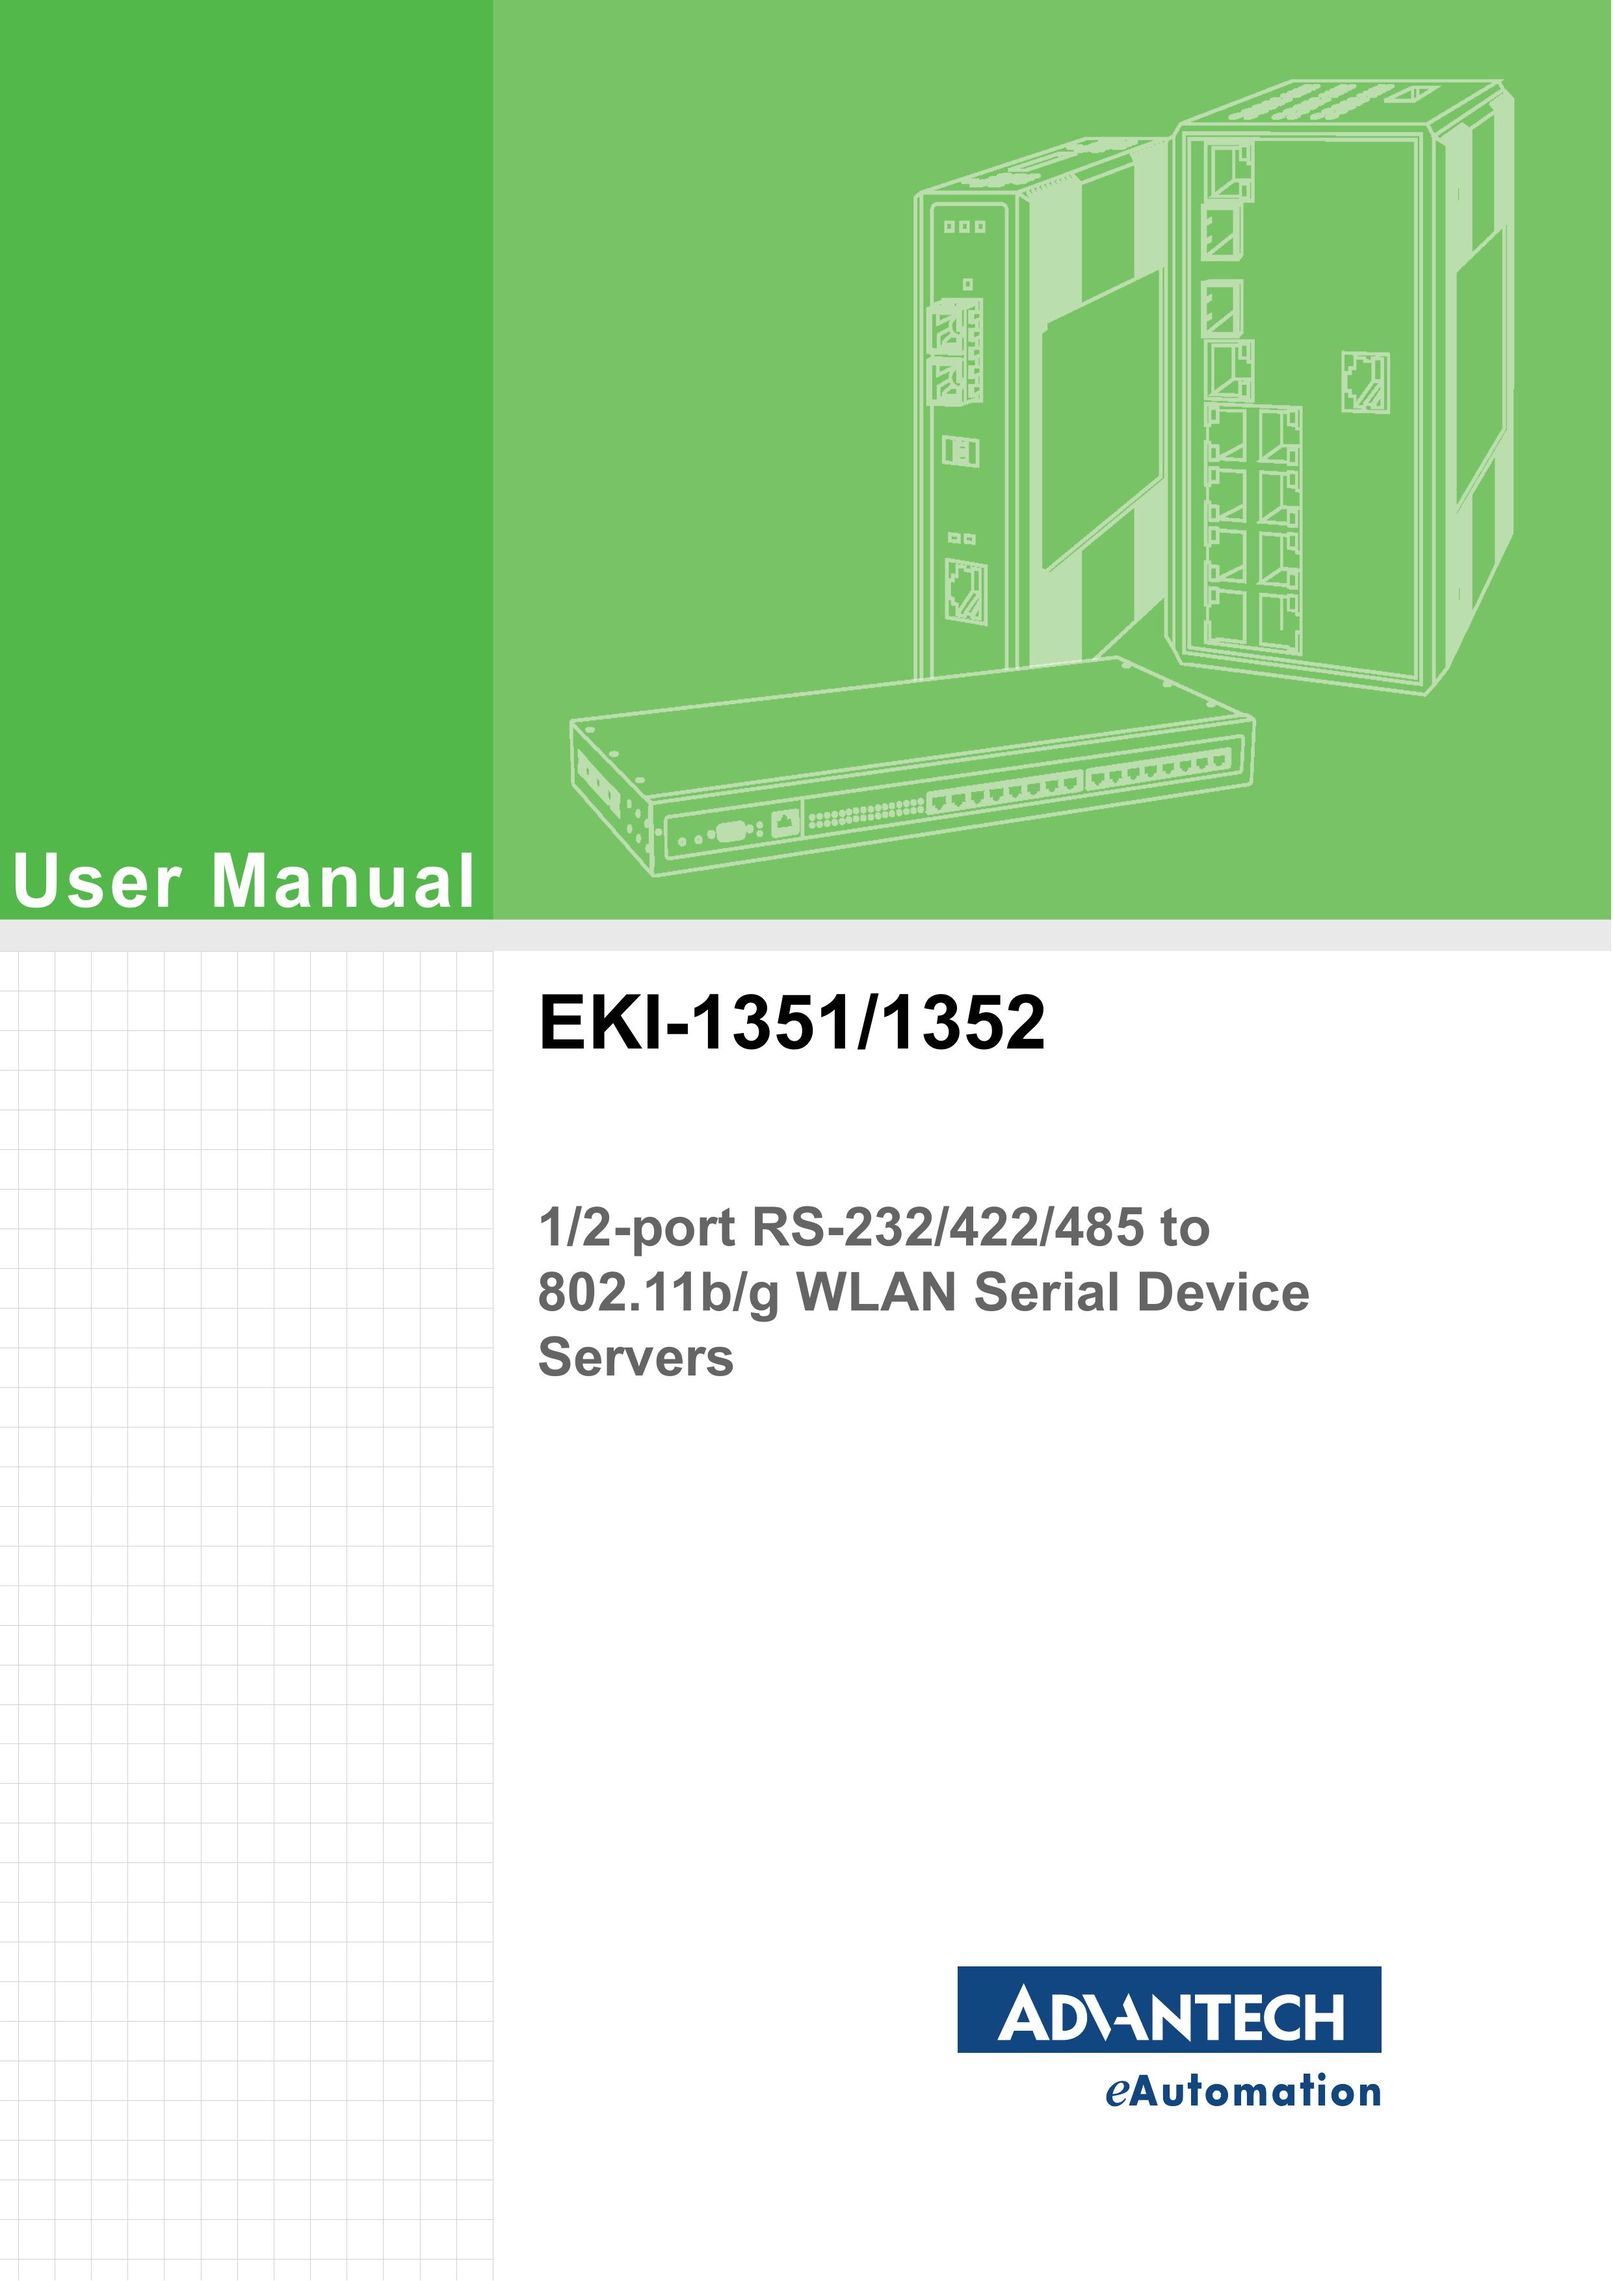 Advantech EKI-1351 Server User Manual